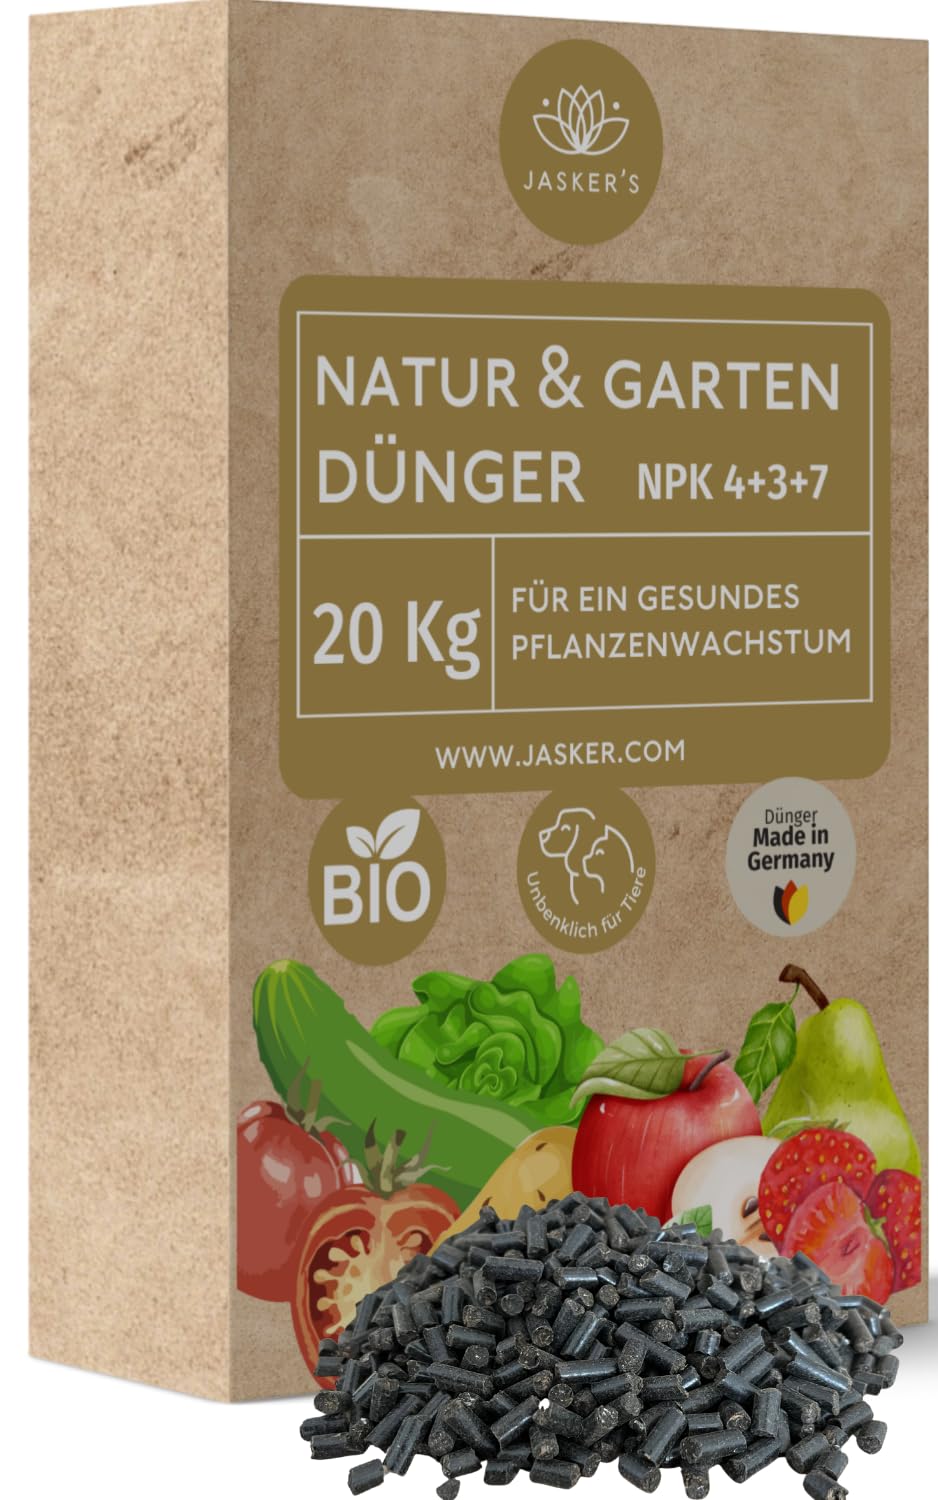 Bio Dünger 20 Kg - 100% Naturdünger & Universaldünger - Ideal als Veganer Dünger für Obst & Gemüse - Pflanzendünger mit viel Kalium & Magnesium - Organischer Volldünger - Bio Dünger Gemüse